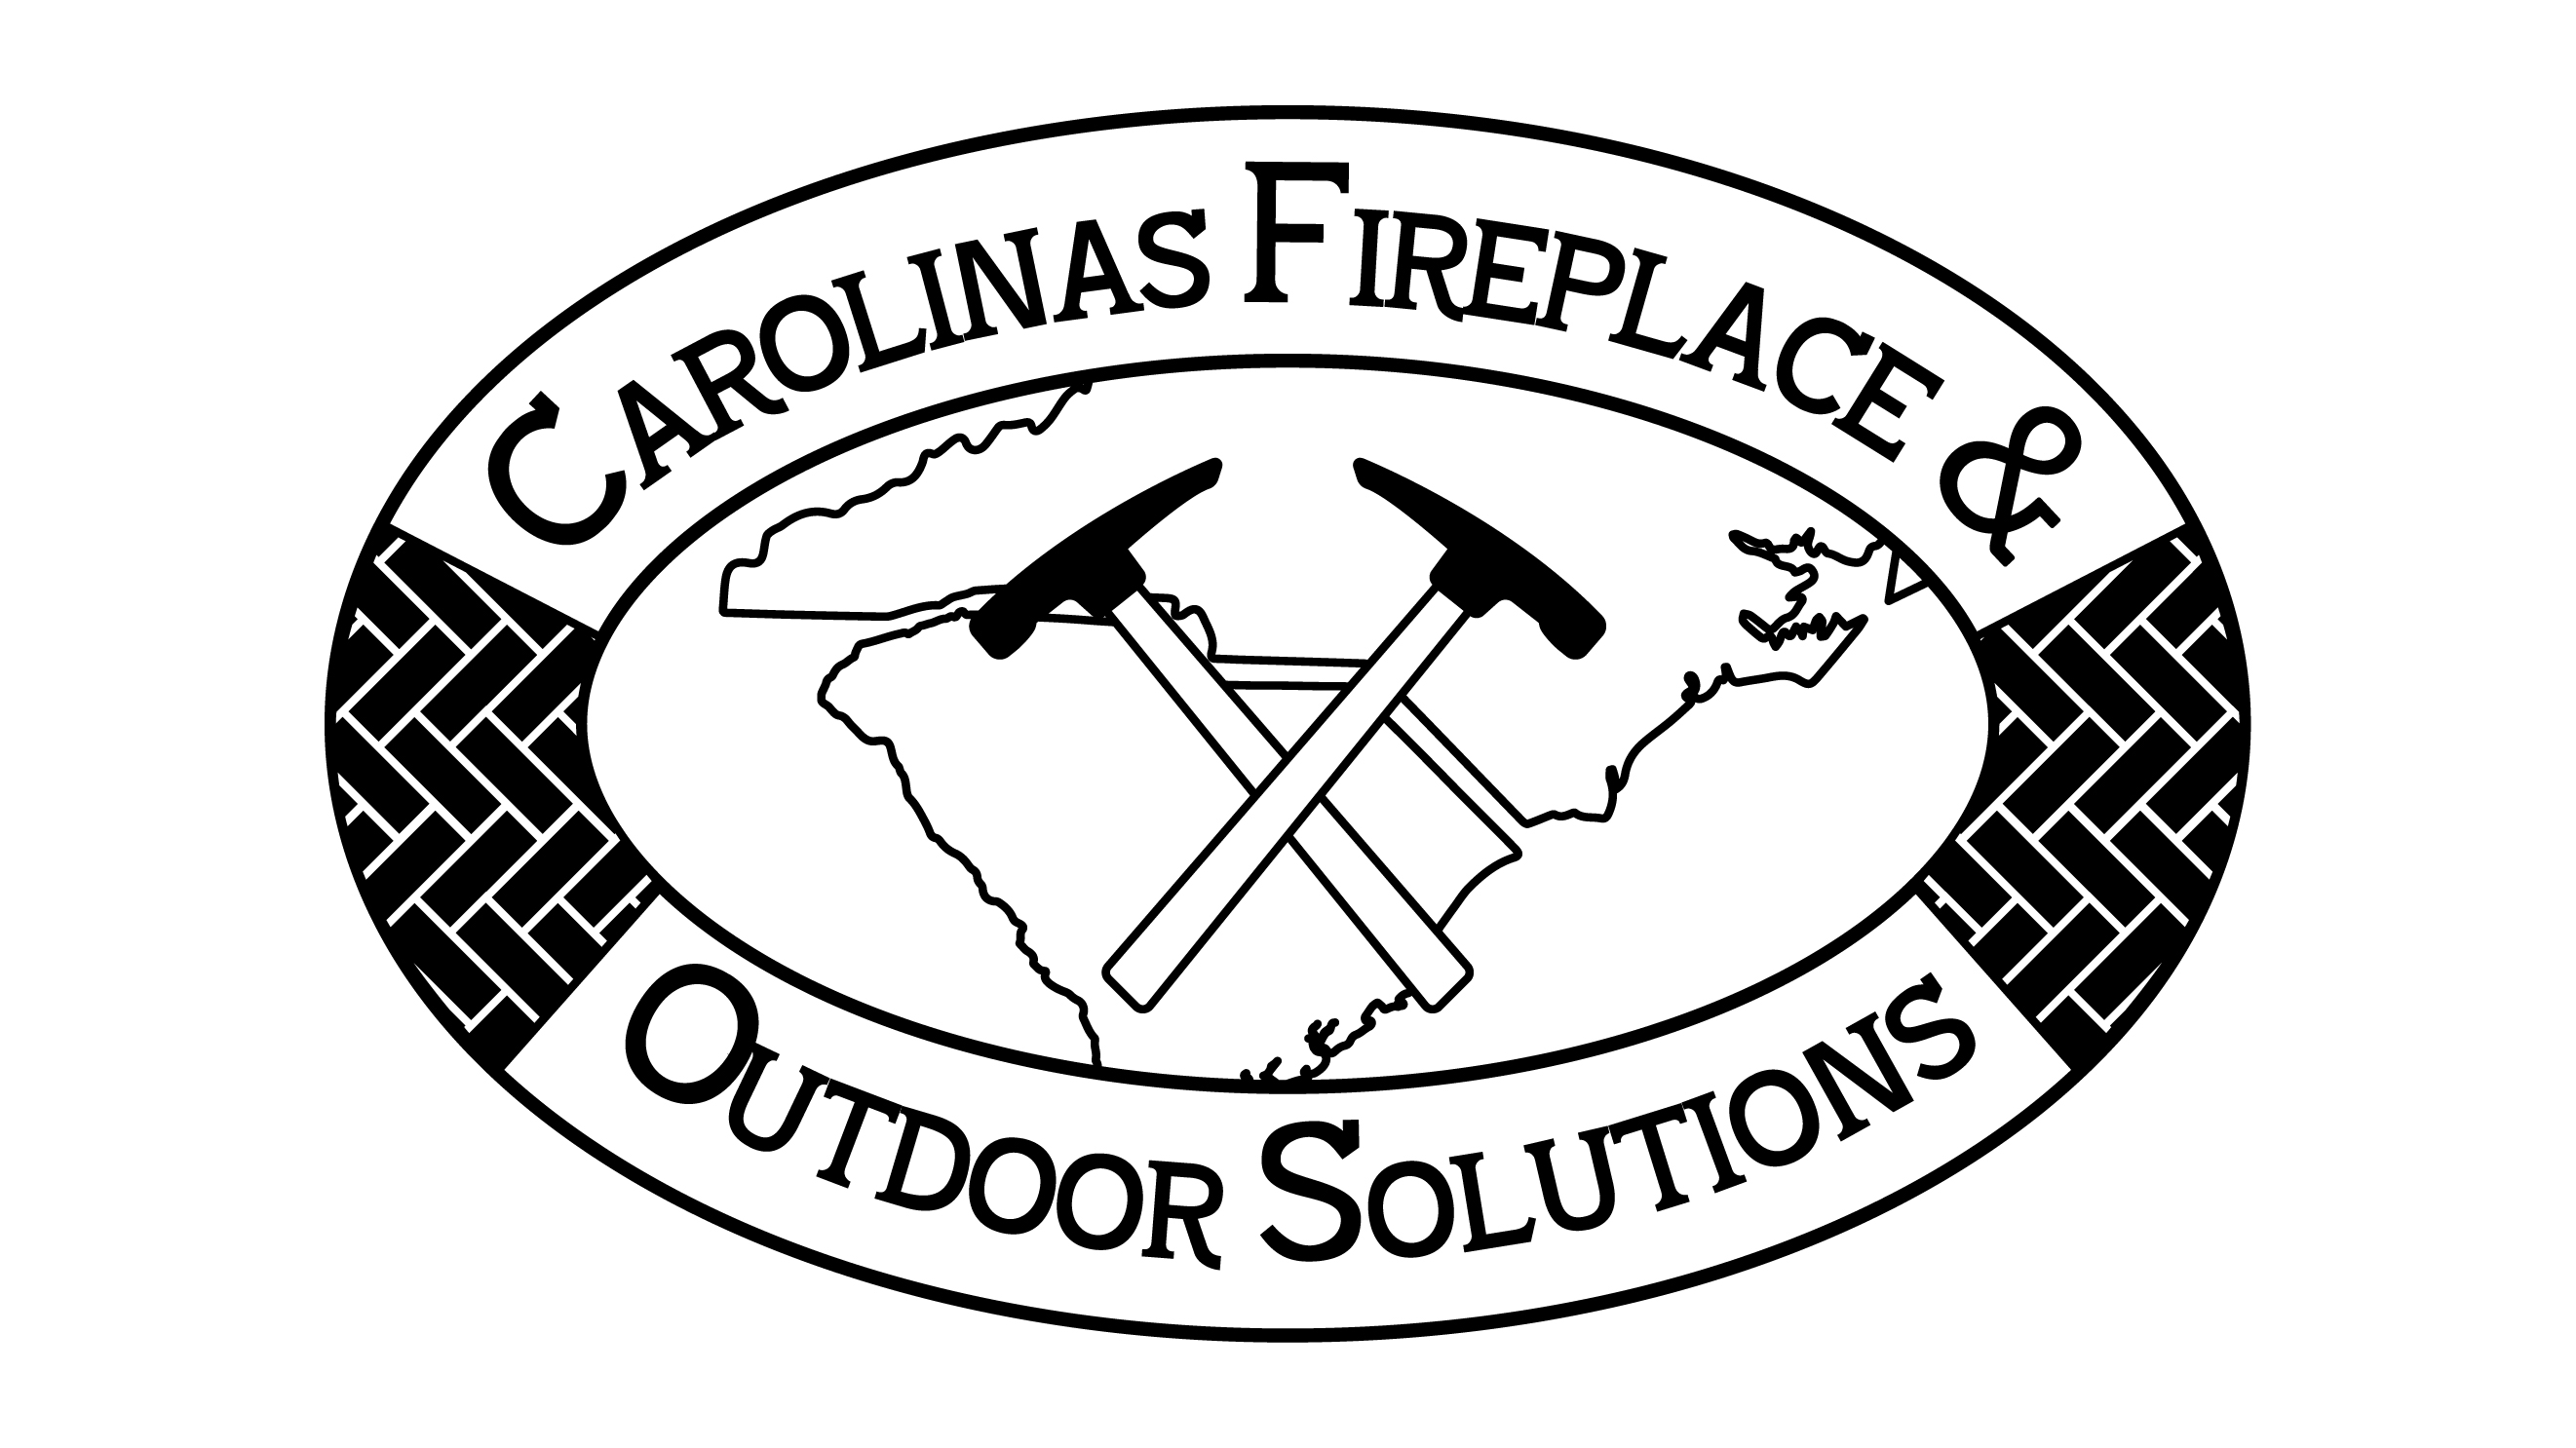 Carolinas Fireplace & Outdoor Solutions Logo